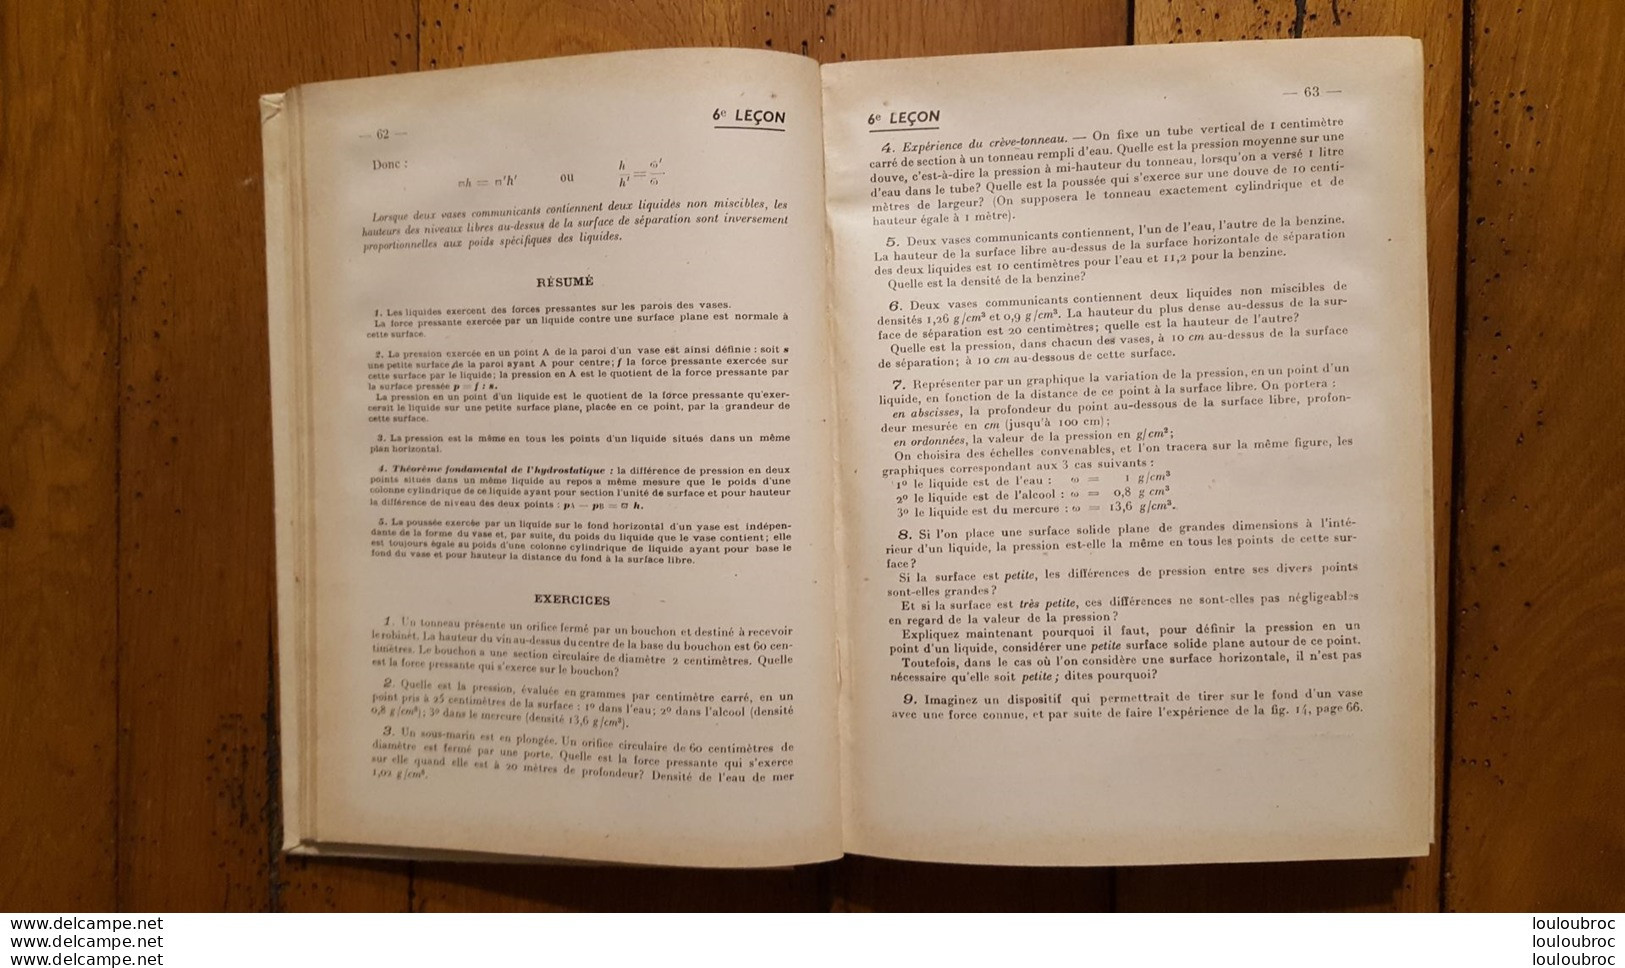 SCIENCES PHYSIQUES CLASSE DE QUATRIEME DEUXIEME  ANNEE 1939 DE PASTOURIAUX ET RUMEAU LIBRAIRIE DELAGRAVE - 12-18 Ans